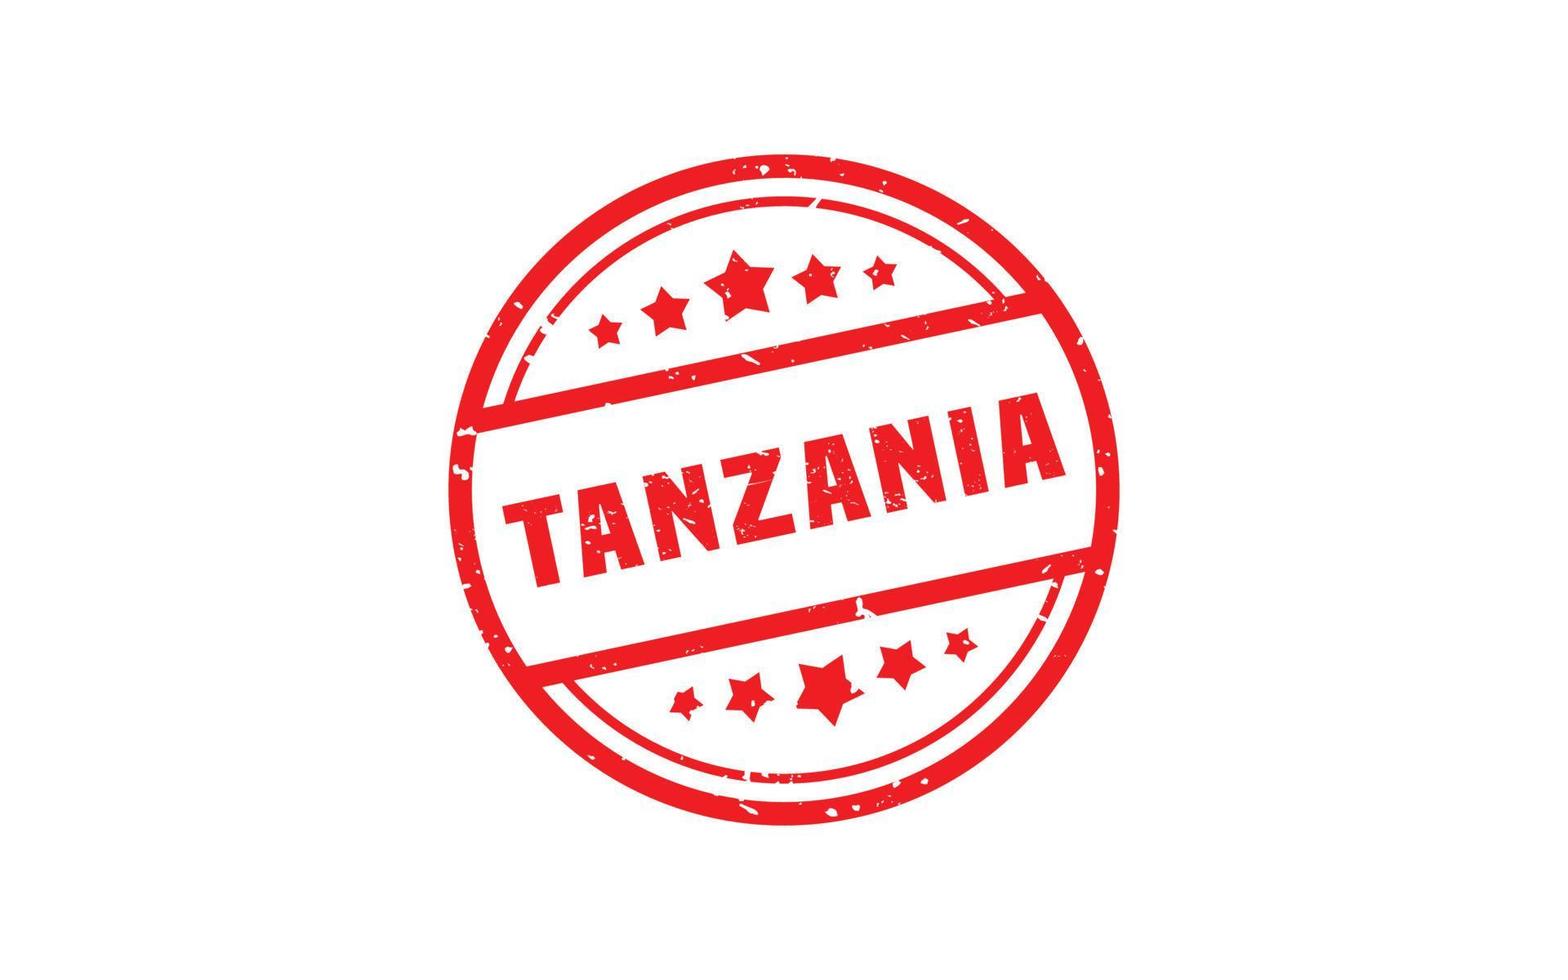 Tanzania rubber postzegel met grunge stijl Aan wit achtergrond vector